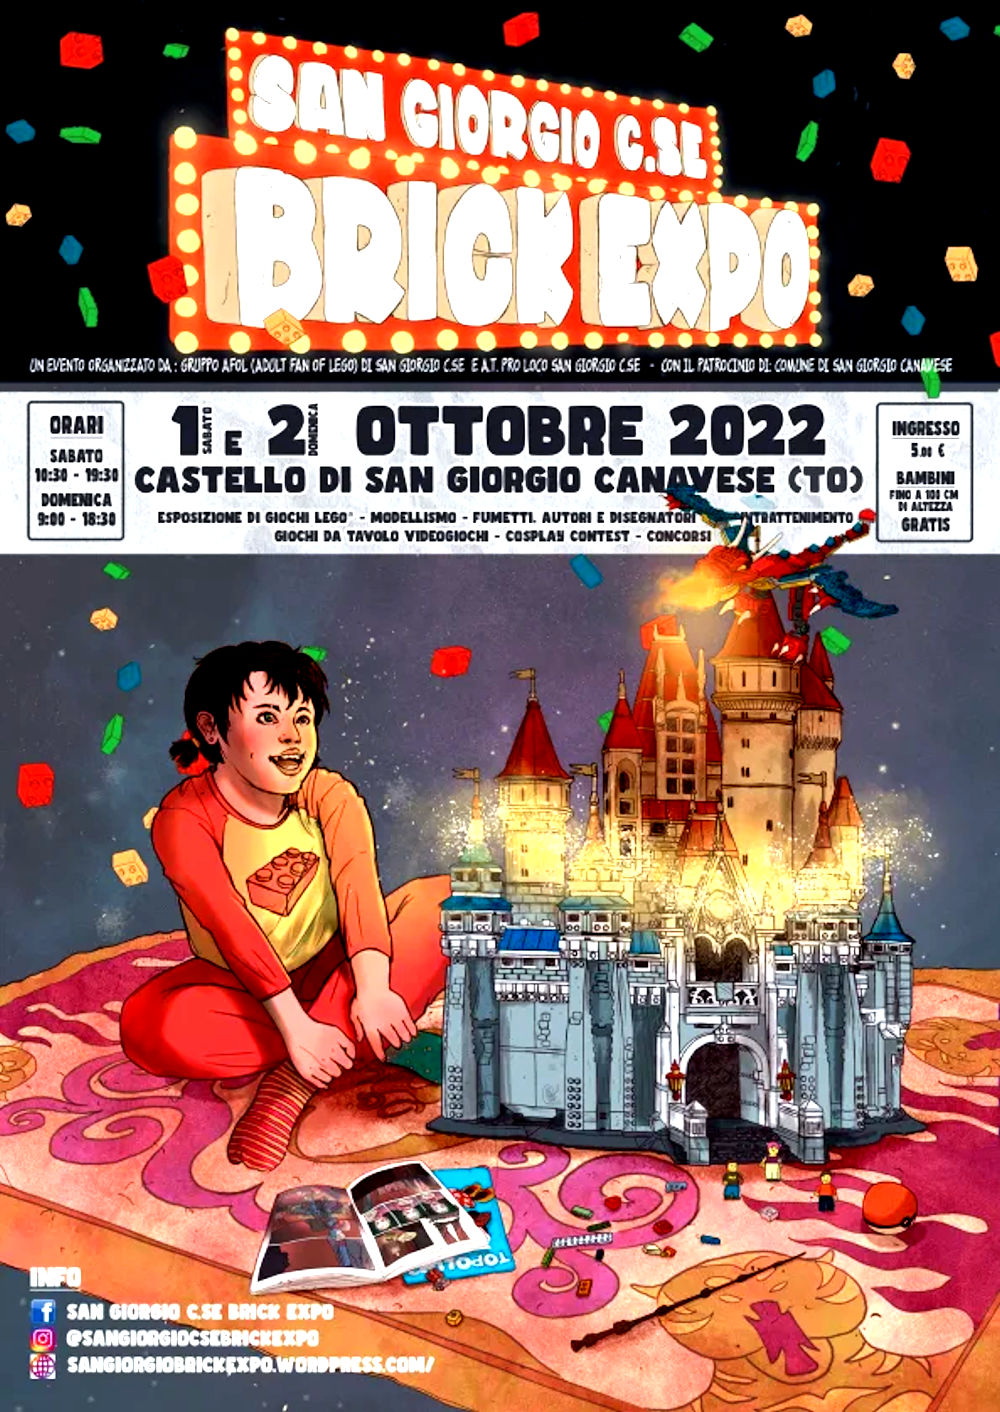 Ritorna il “San Giorgio C.se Brick Expo”, l’1 e il 2 ottobre 2022